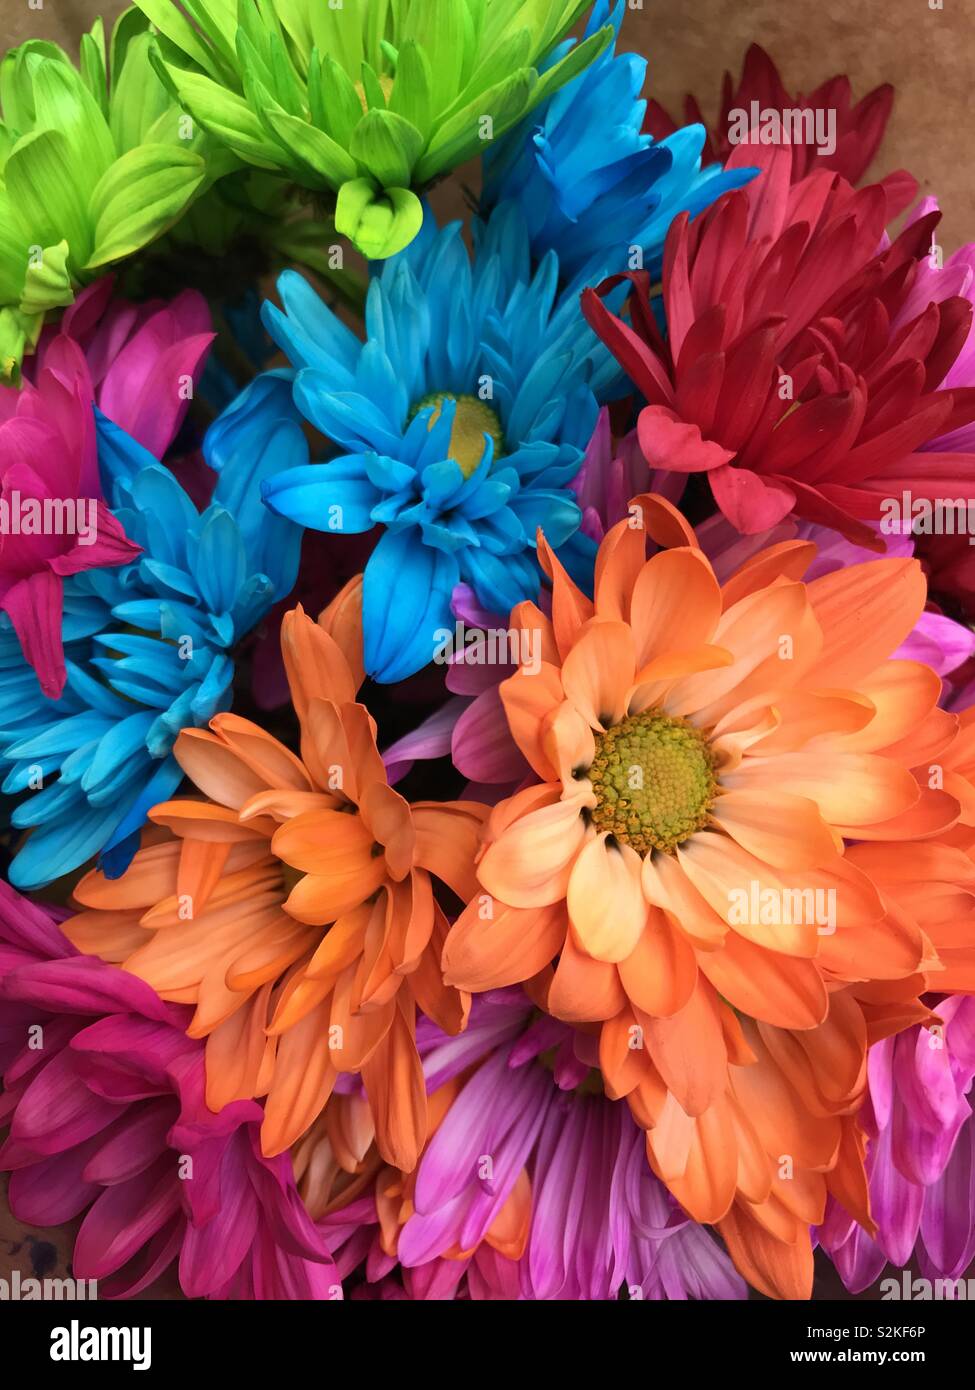 Teints de couleurs vives dans un bouquet de marguerites Banque D'Images